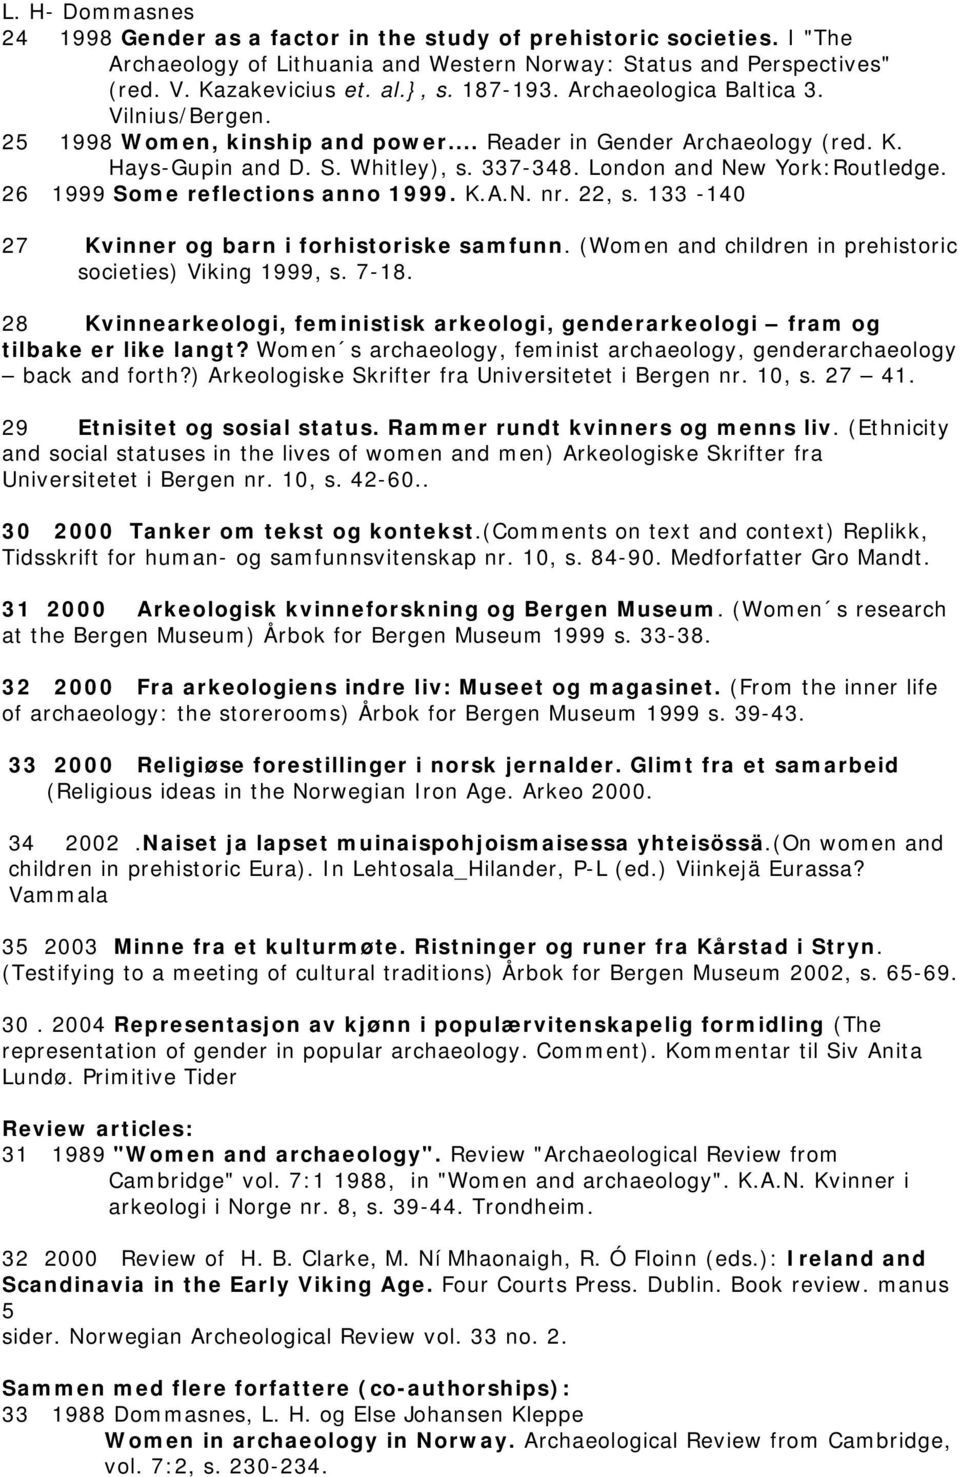 26 1999 Some reflections anno 1999. K.A.N. nr. 22, s. 133-140 27 Kvinner og barn i forhistoriske samfunn. (Women and children in prehistoric societies) Viking 1999, s. 7-18.